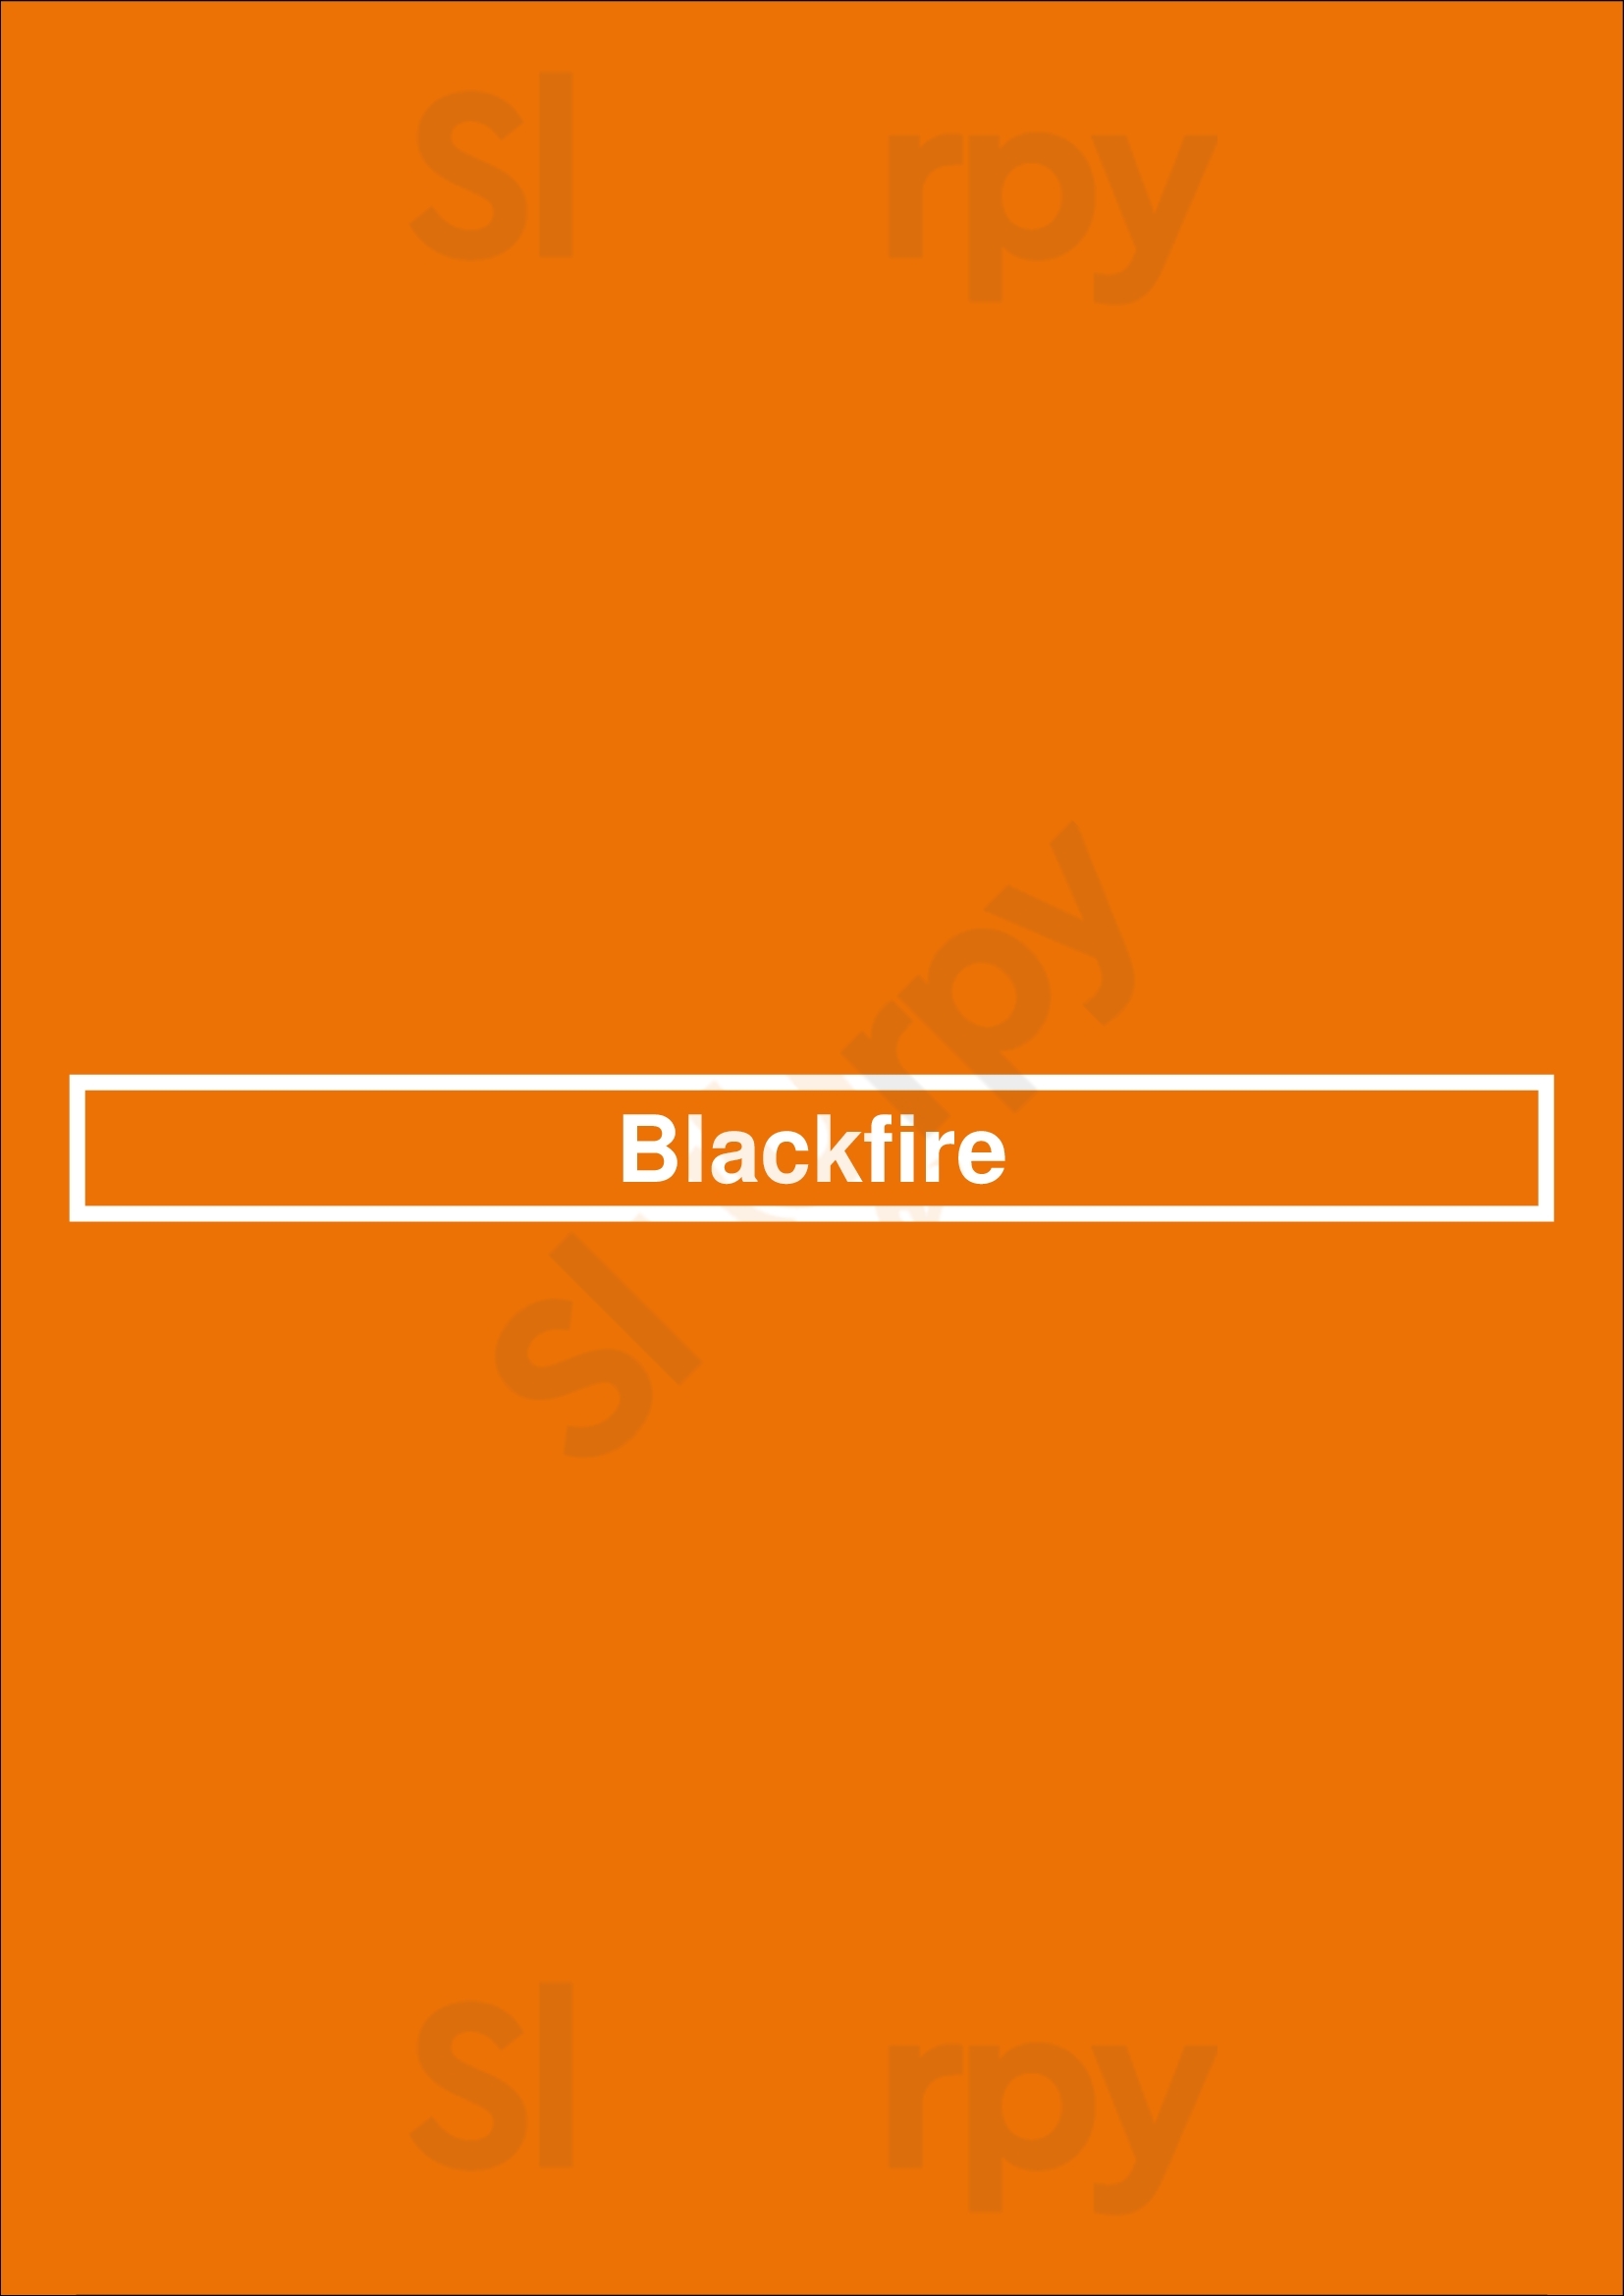 Blackfire Brisbane Menu - 1